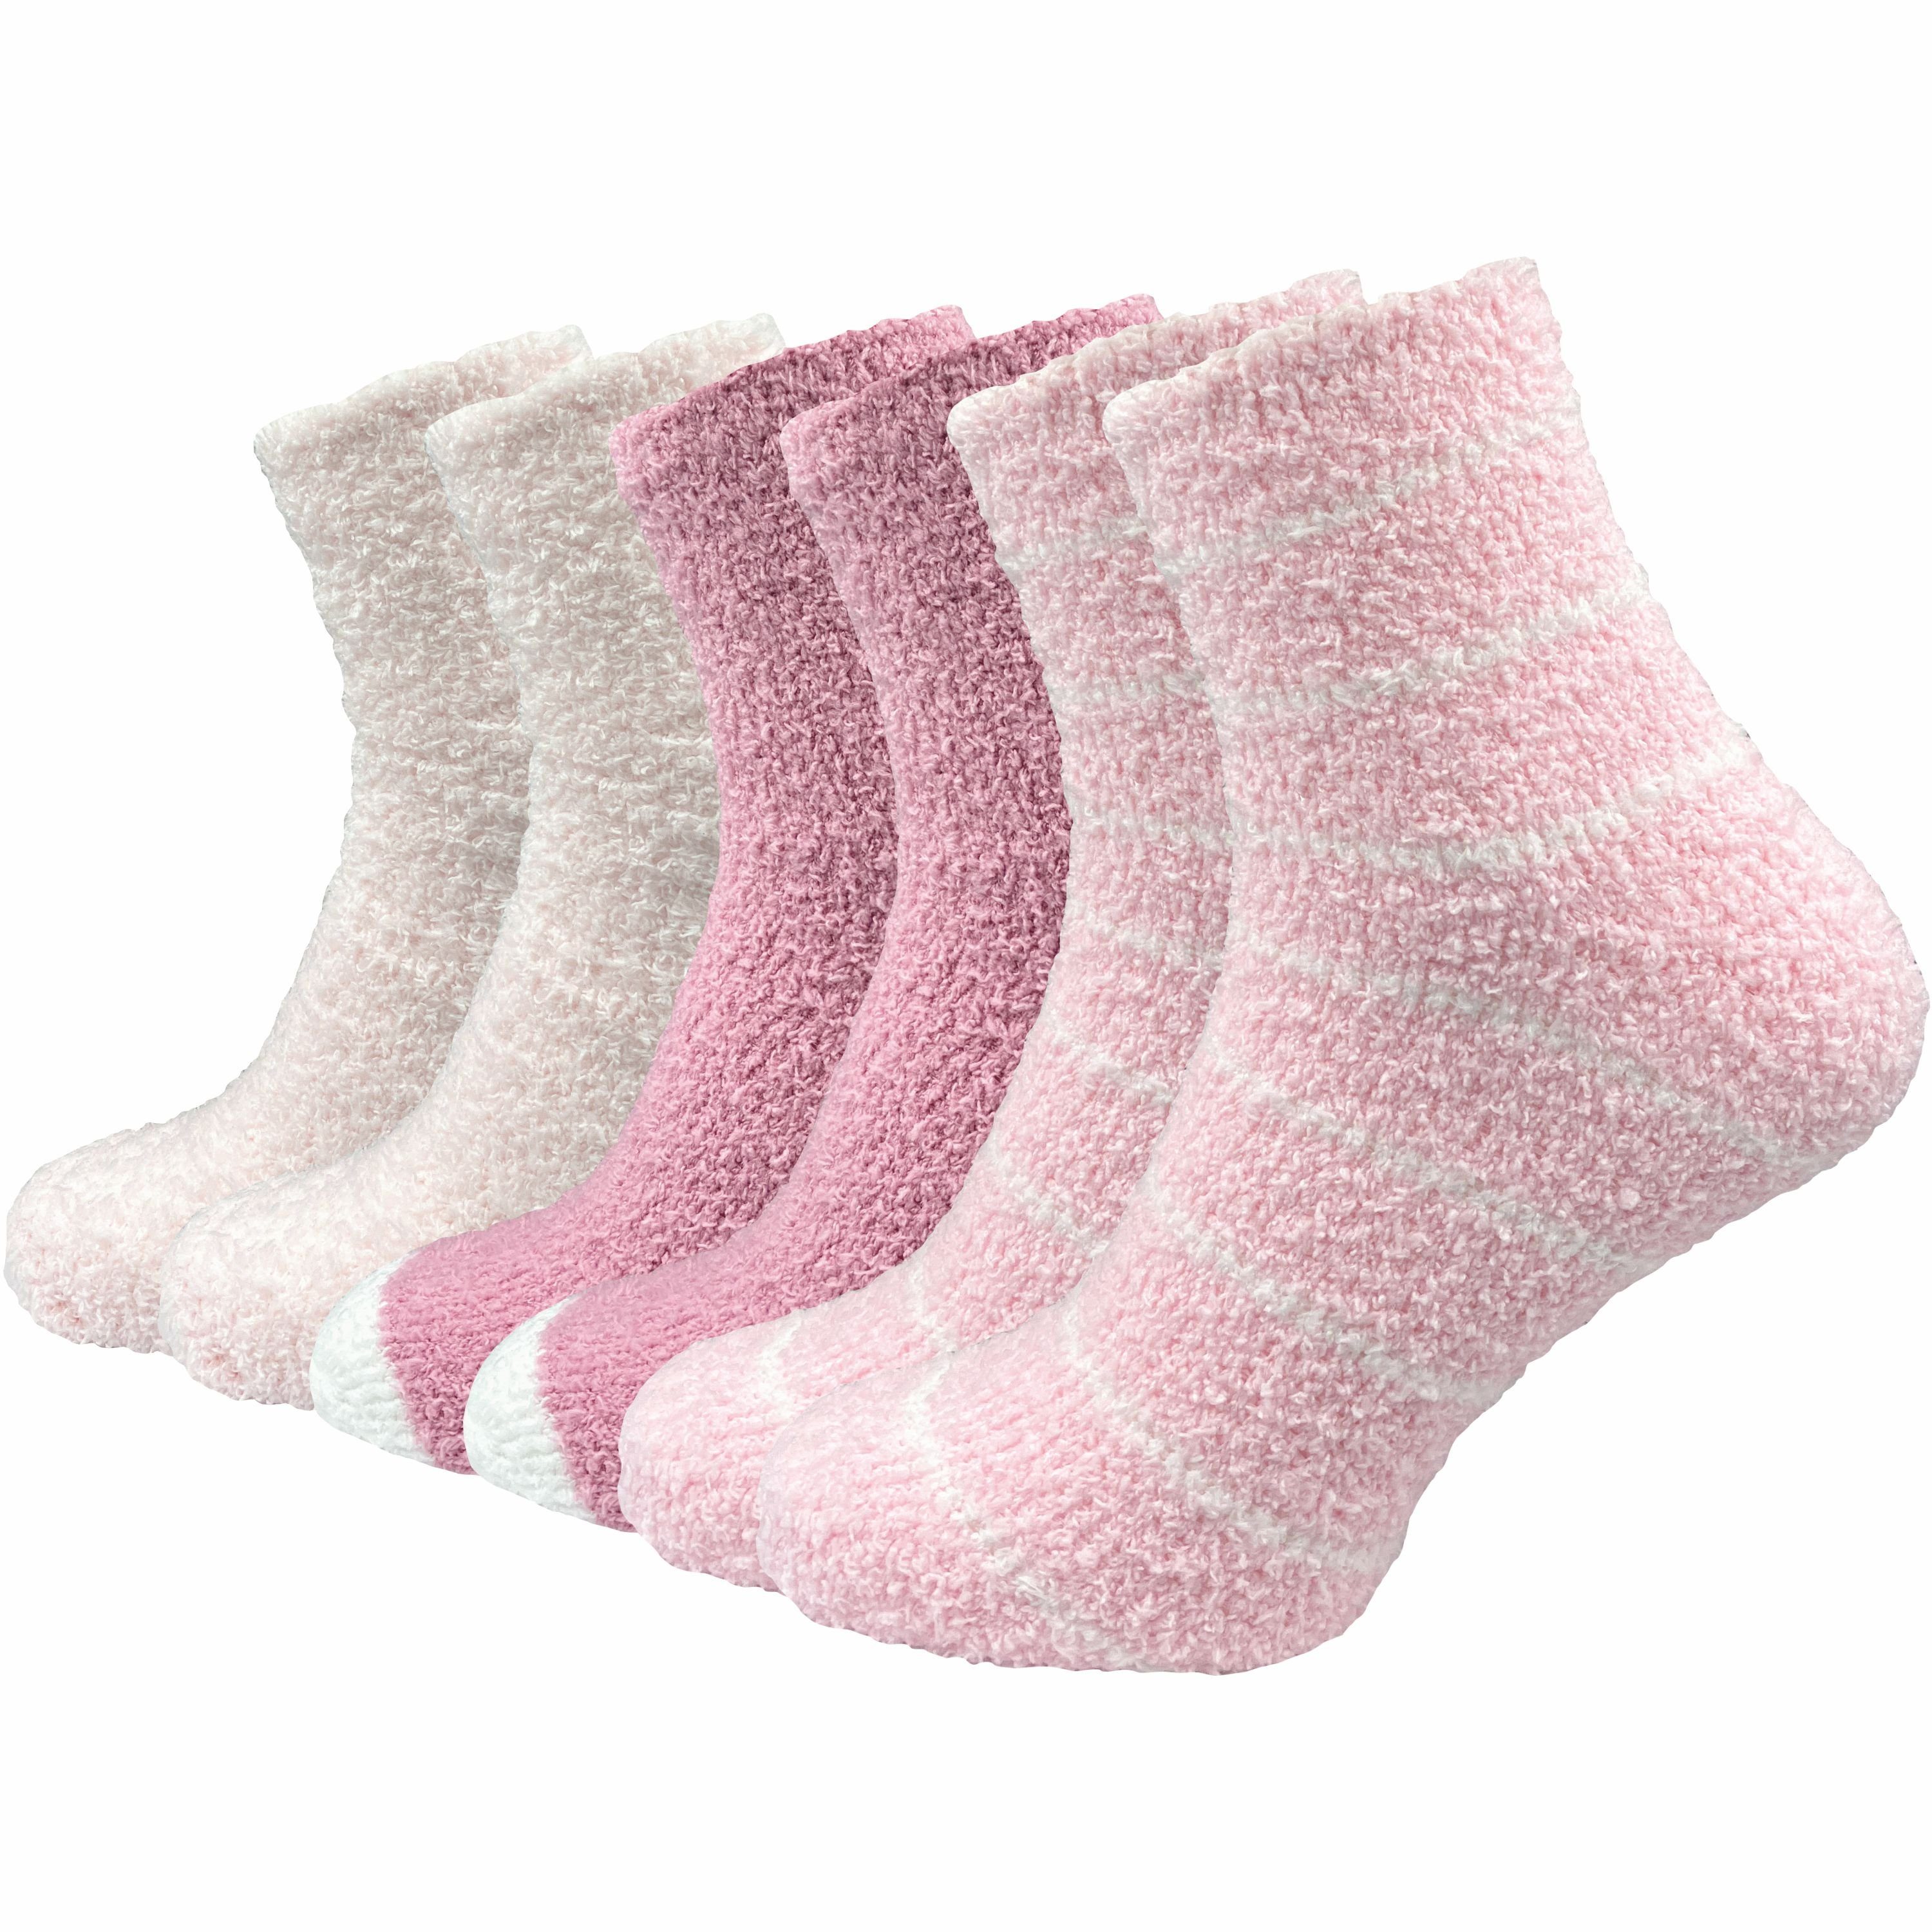 GAWILO Мягкие носочки für Damen für warme Füße an kalten Tagen - extra weich & flauschig (6 Paar) Haussocken aus flauschigem Material für optimalen Tragekomfort